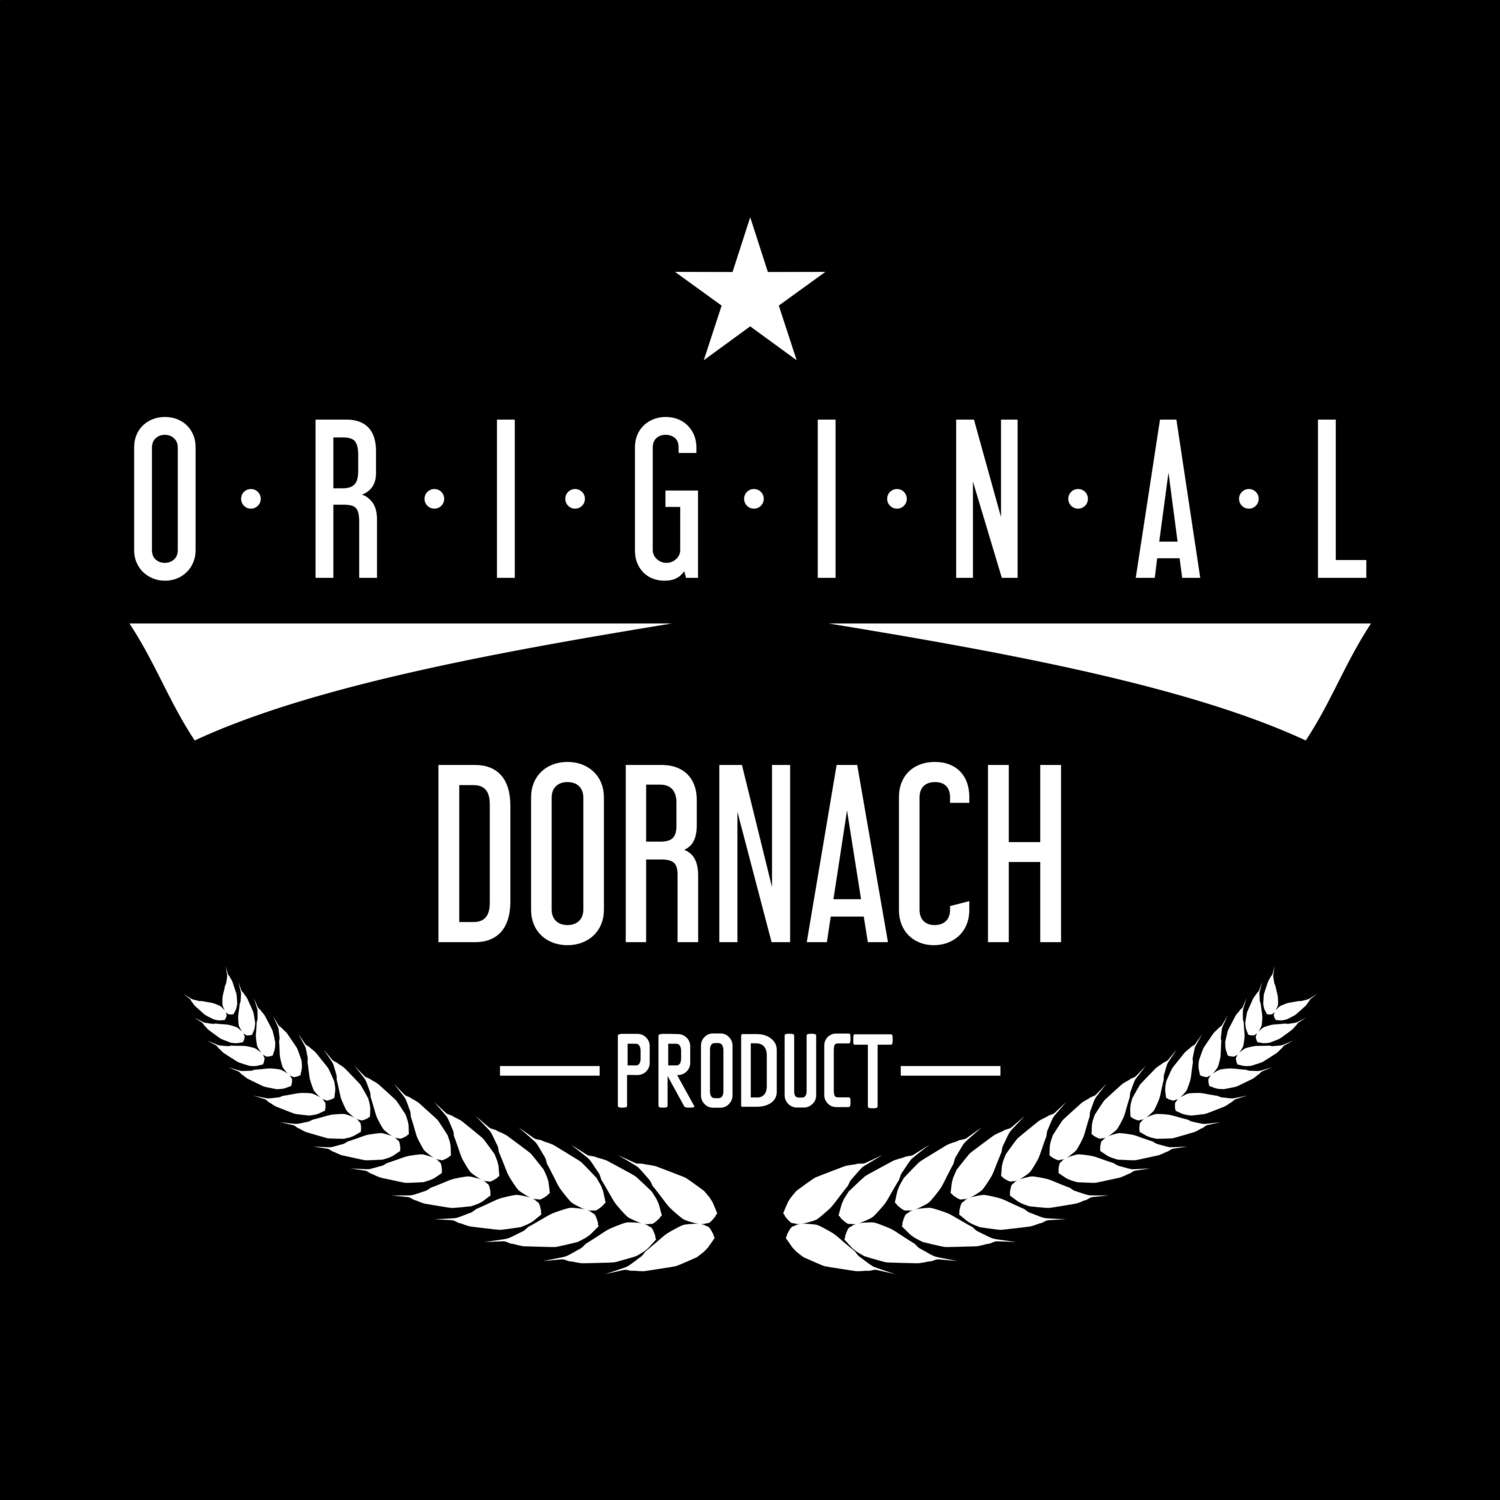 Dornach T-Shirt »Original Product«